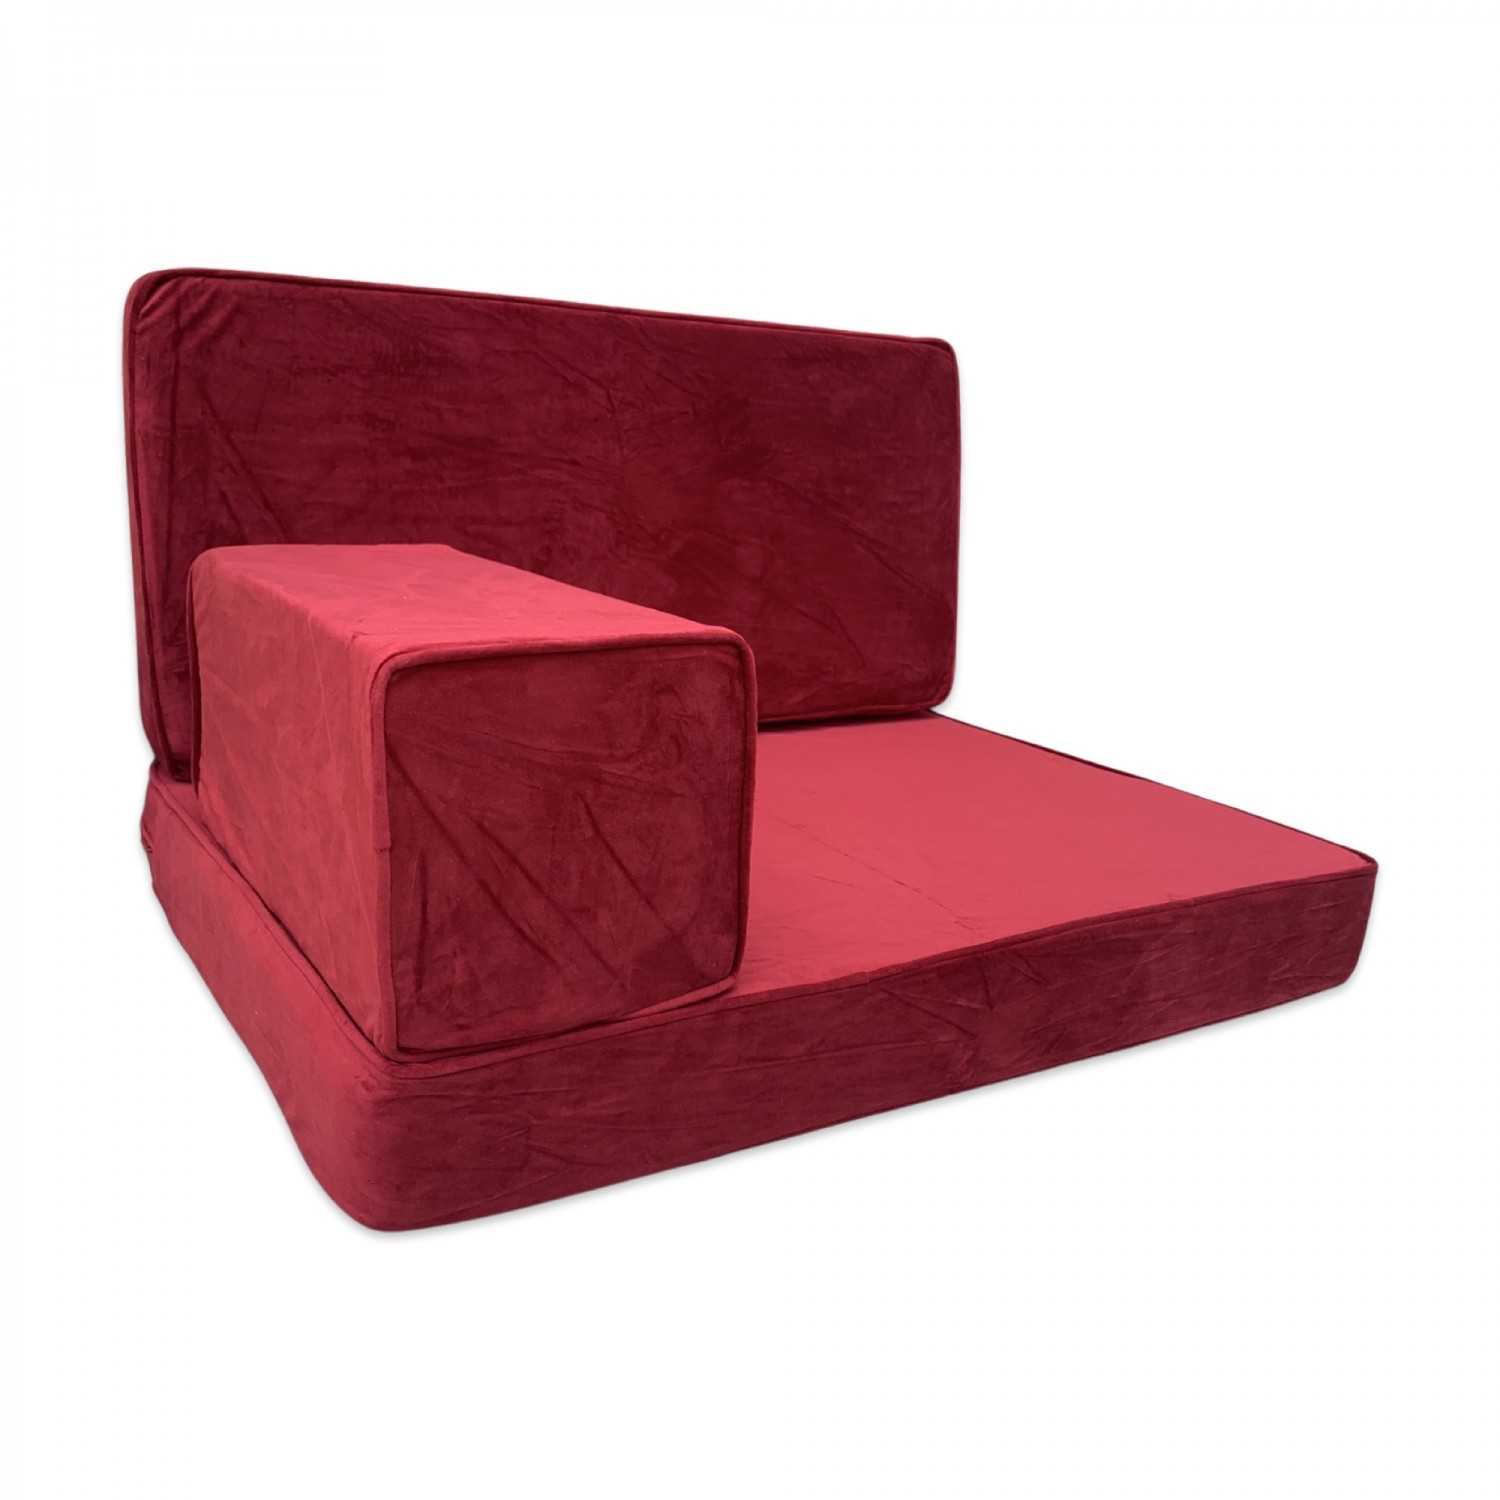 Handmade velvet bench cushions, Reading floor cushions